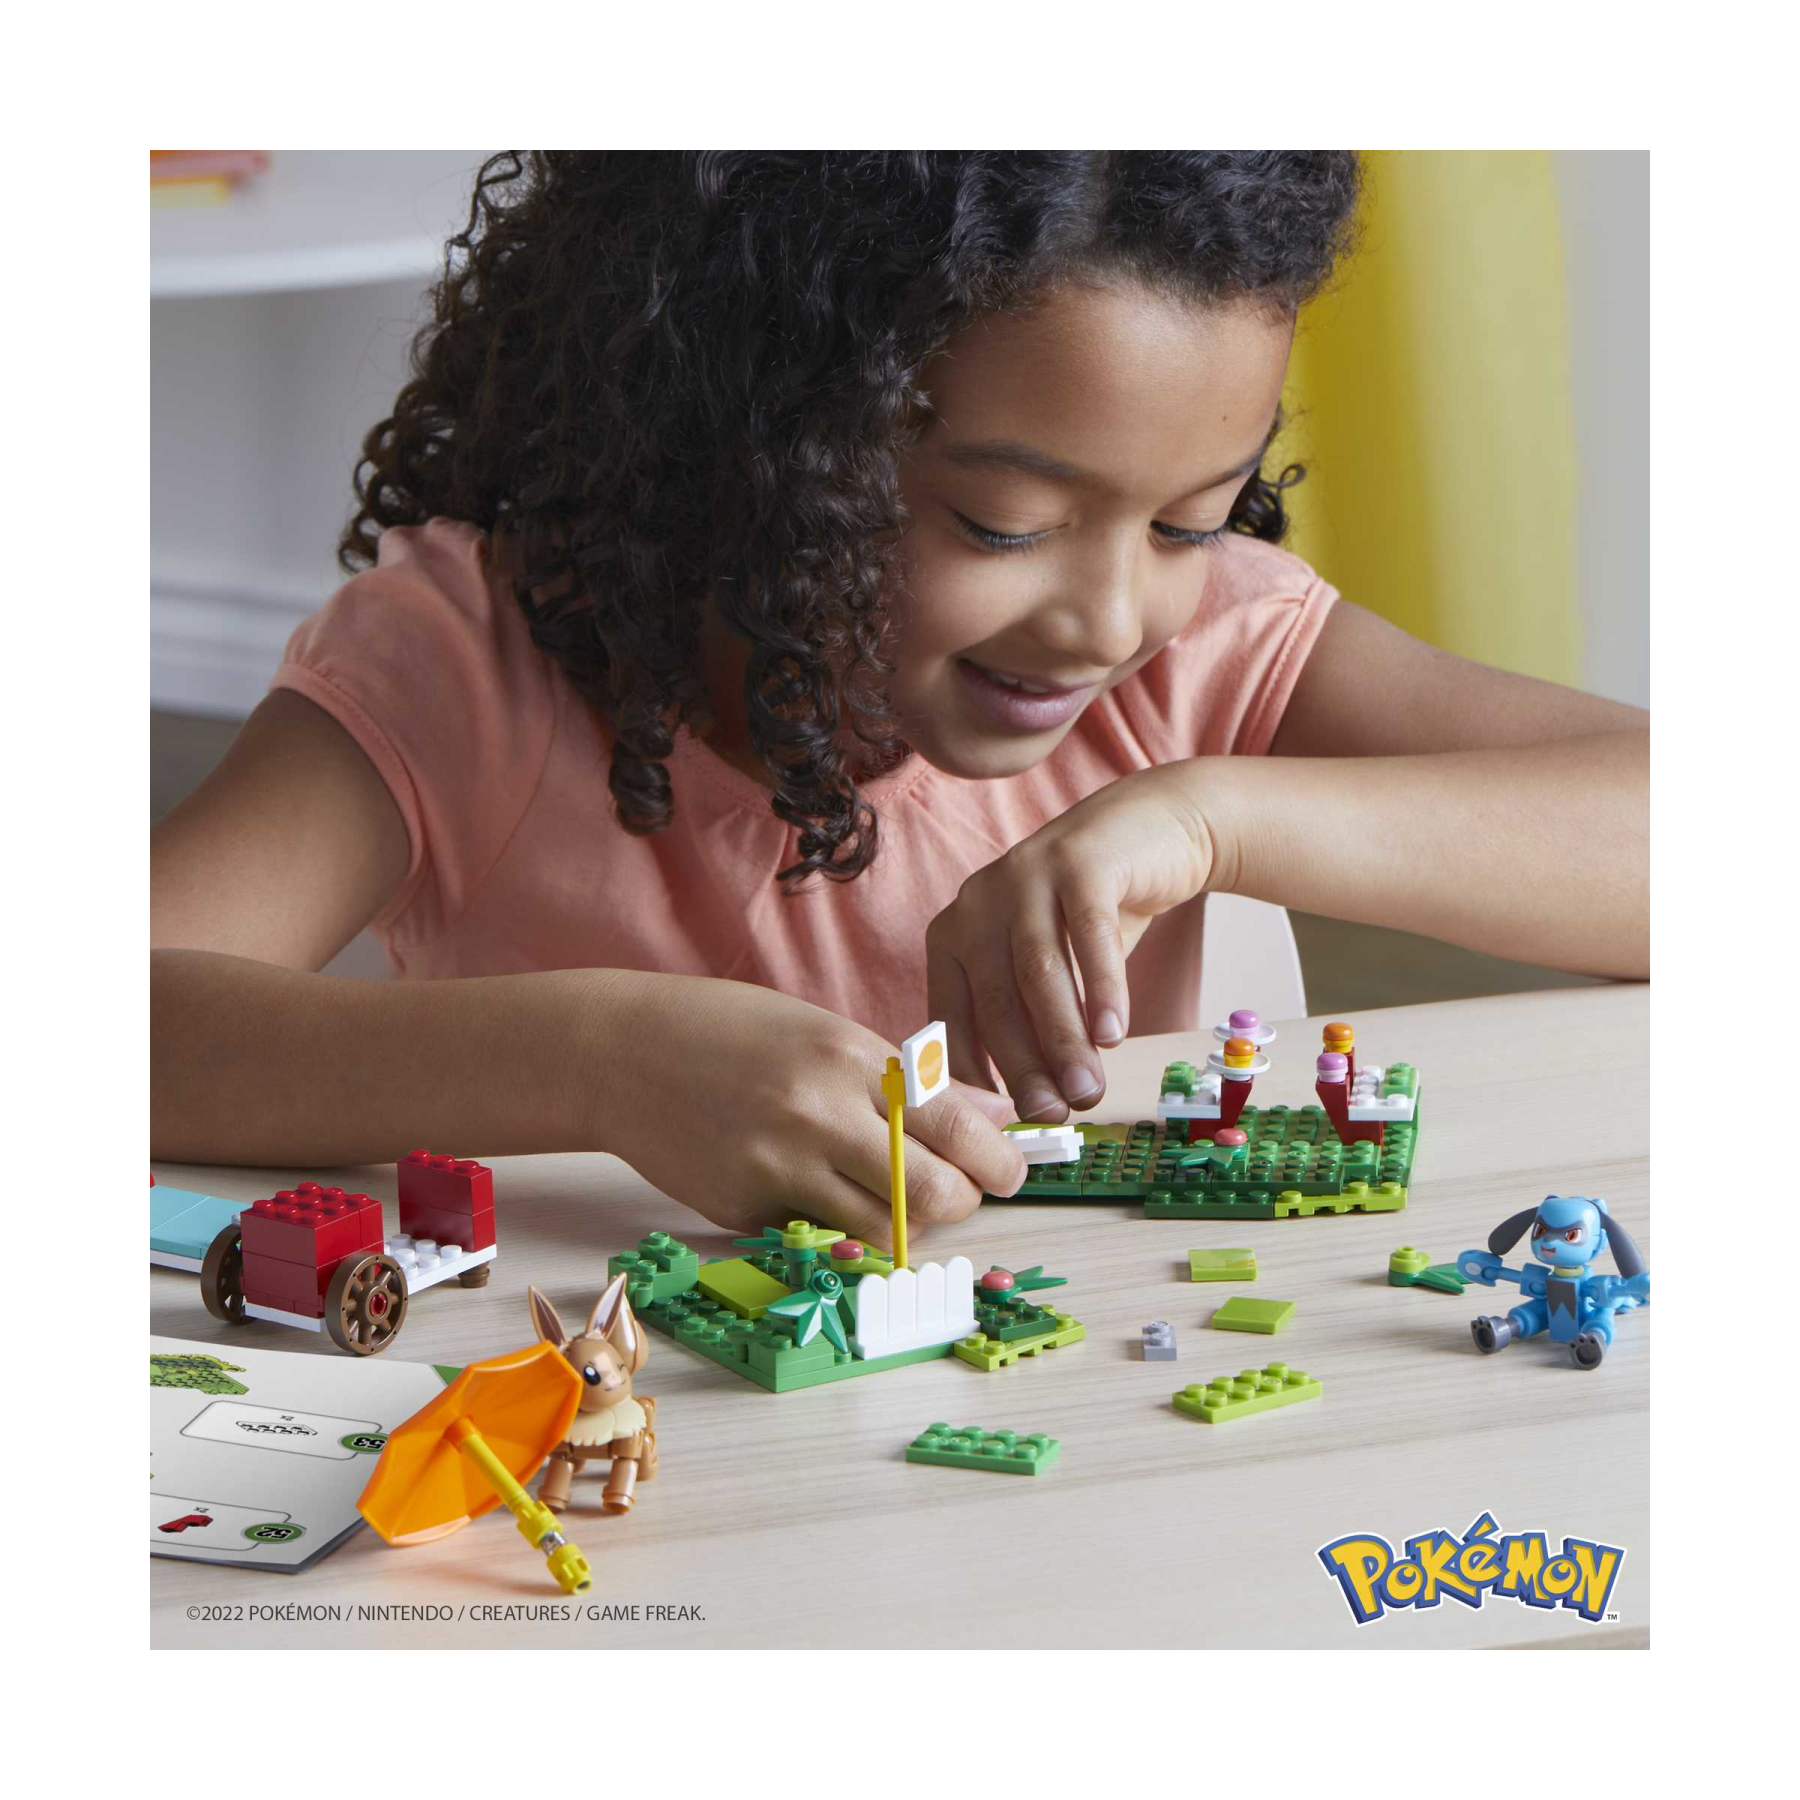 Mega pokémon adventure builder picnic set di costruzioni con 193 mattoncini e pezzi compatibili per collegarlo ad altri mondi, set regalo per bambini dai 7 anni in su - 